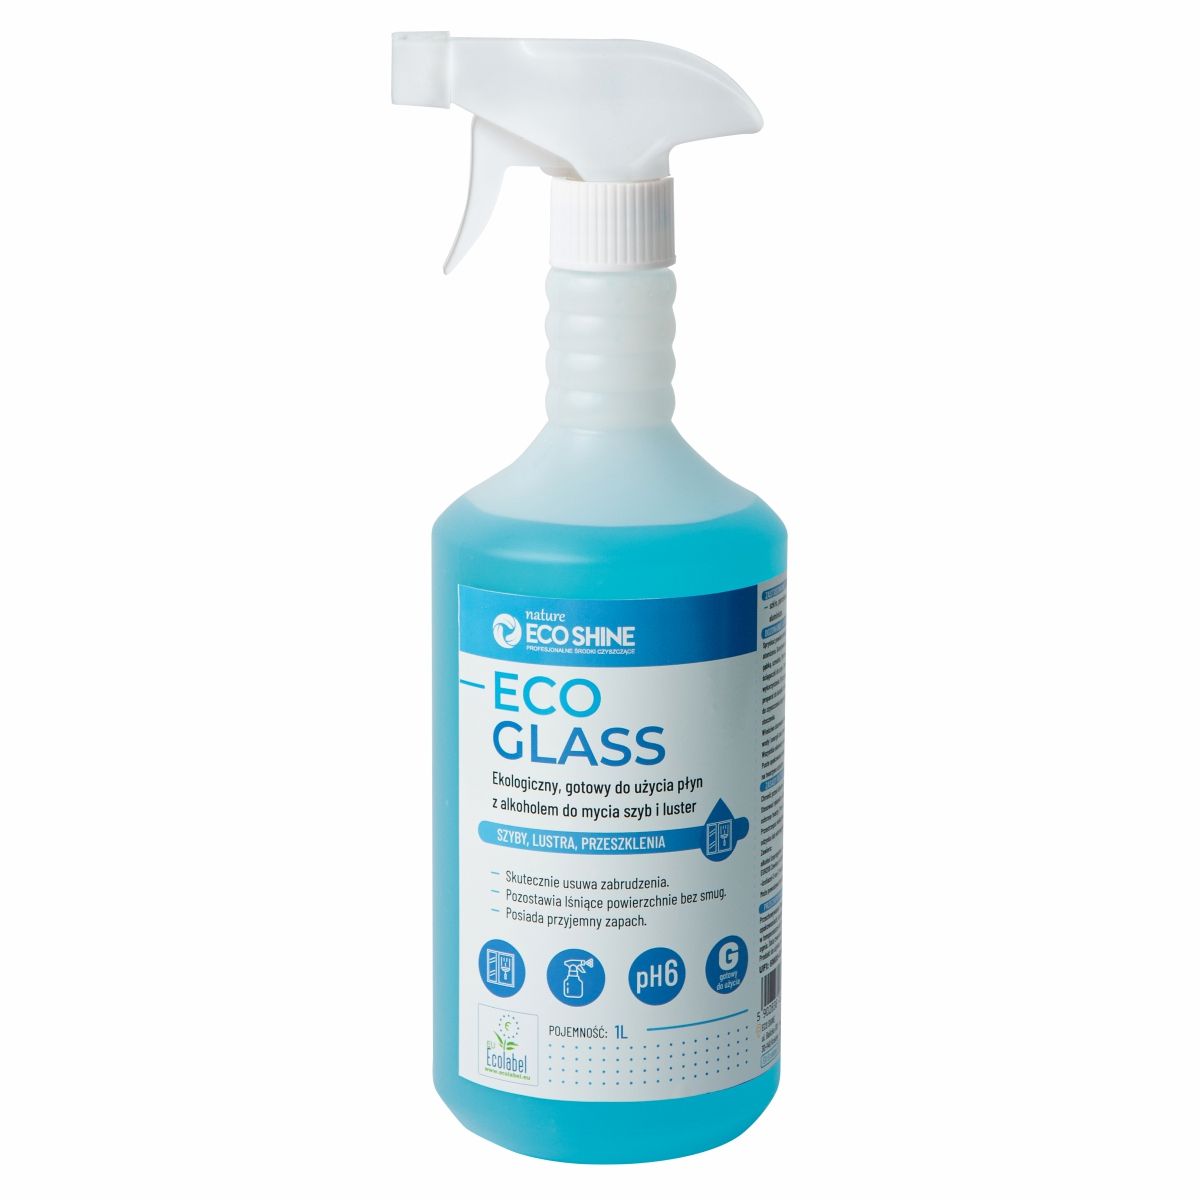 ECO SHINE Eco Glass - Ekologiczny płyn do mycia szyb i luster - 1L